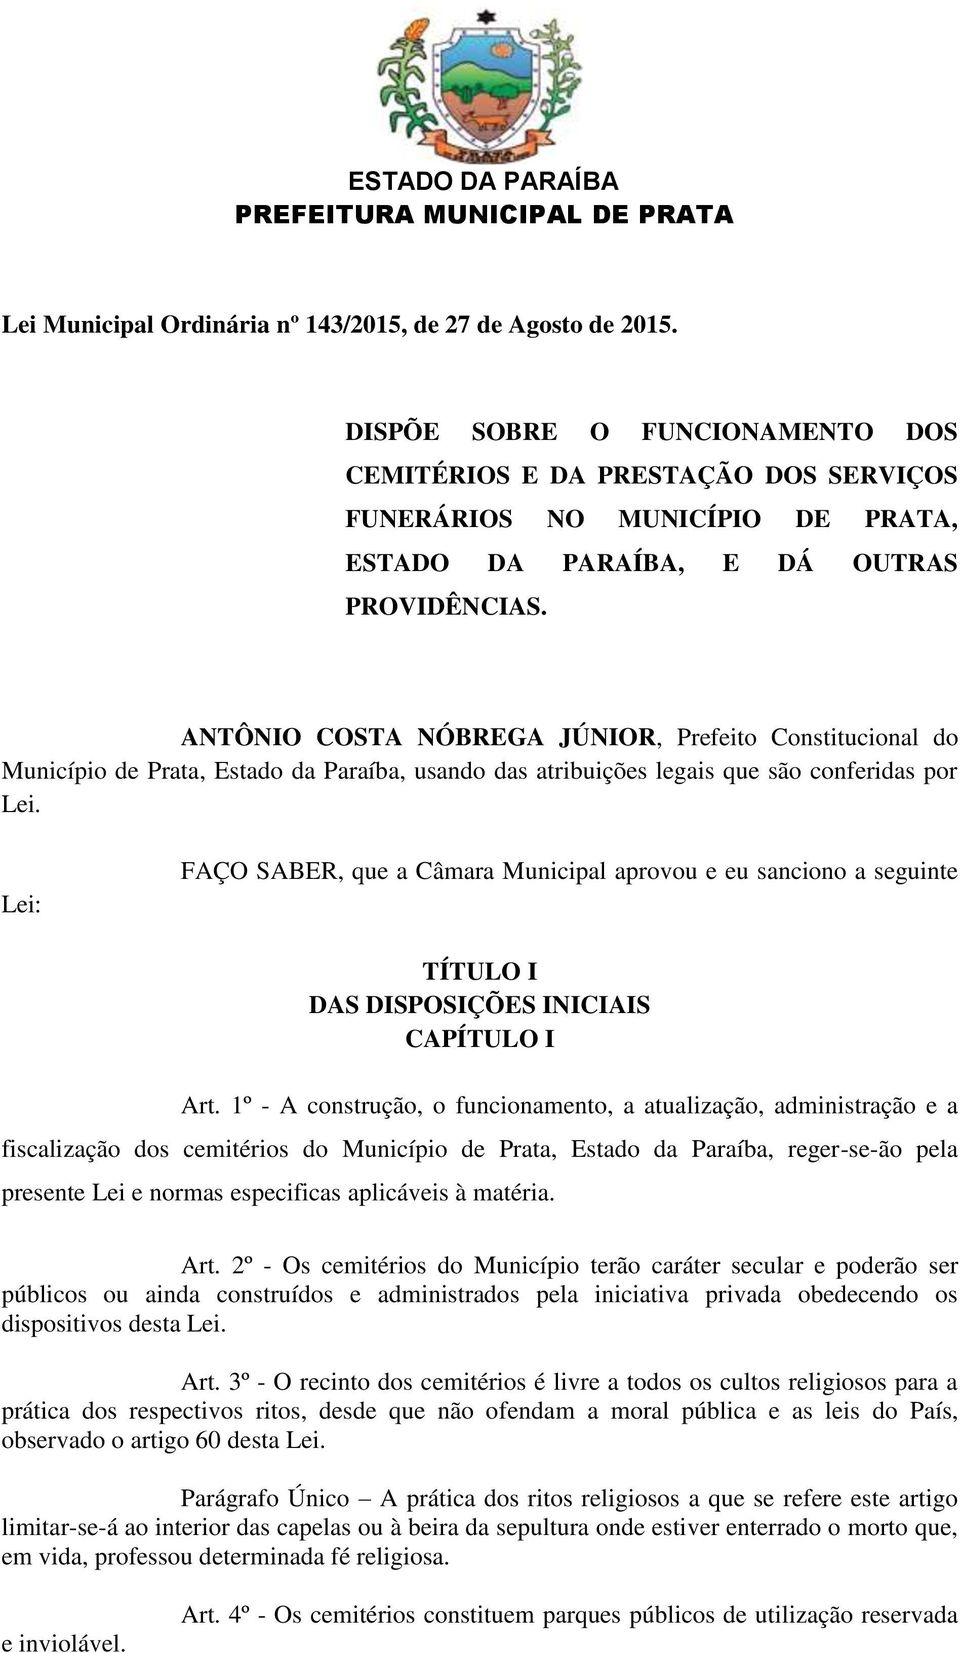 ANTÔNIO COSTA NÓBREGA JÚNIOR, Prefeito Constitucional do Município de Prata, Estado da Paraíba, usando das atribuições legais que são conferidas por Lei.